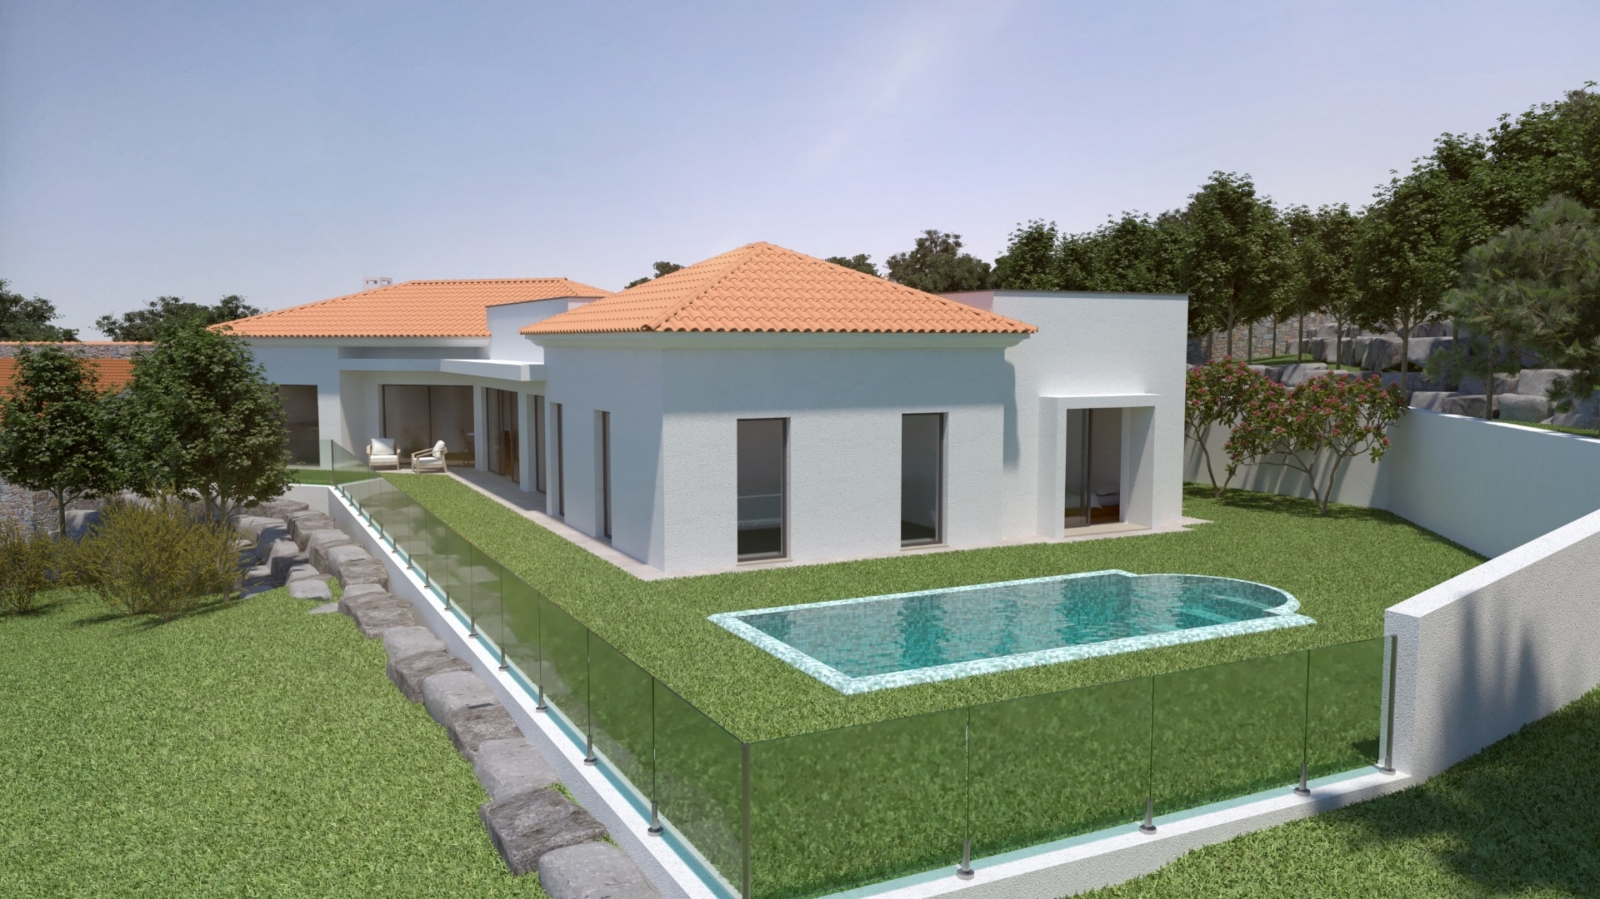 Terreno para construção de moradia T3, para venda, em Silves, Algarve_200012